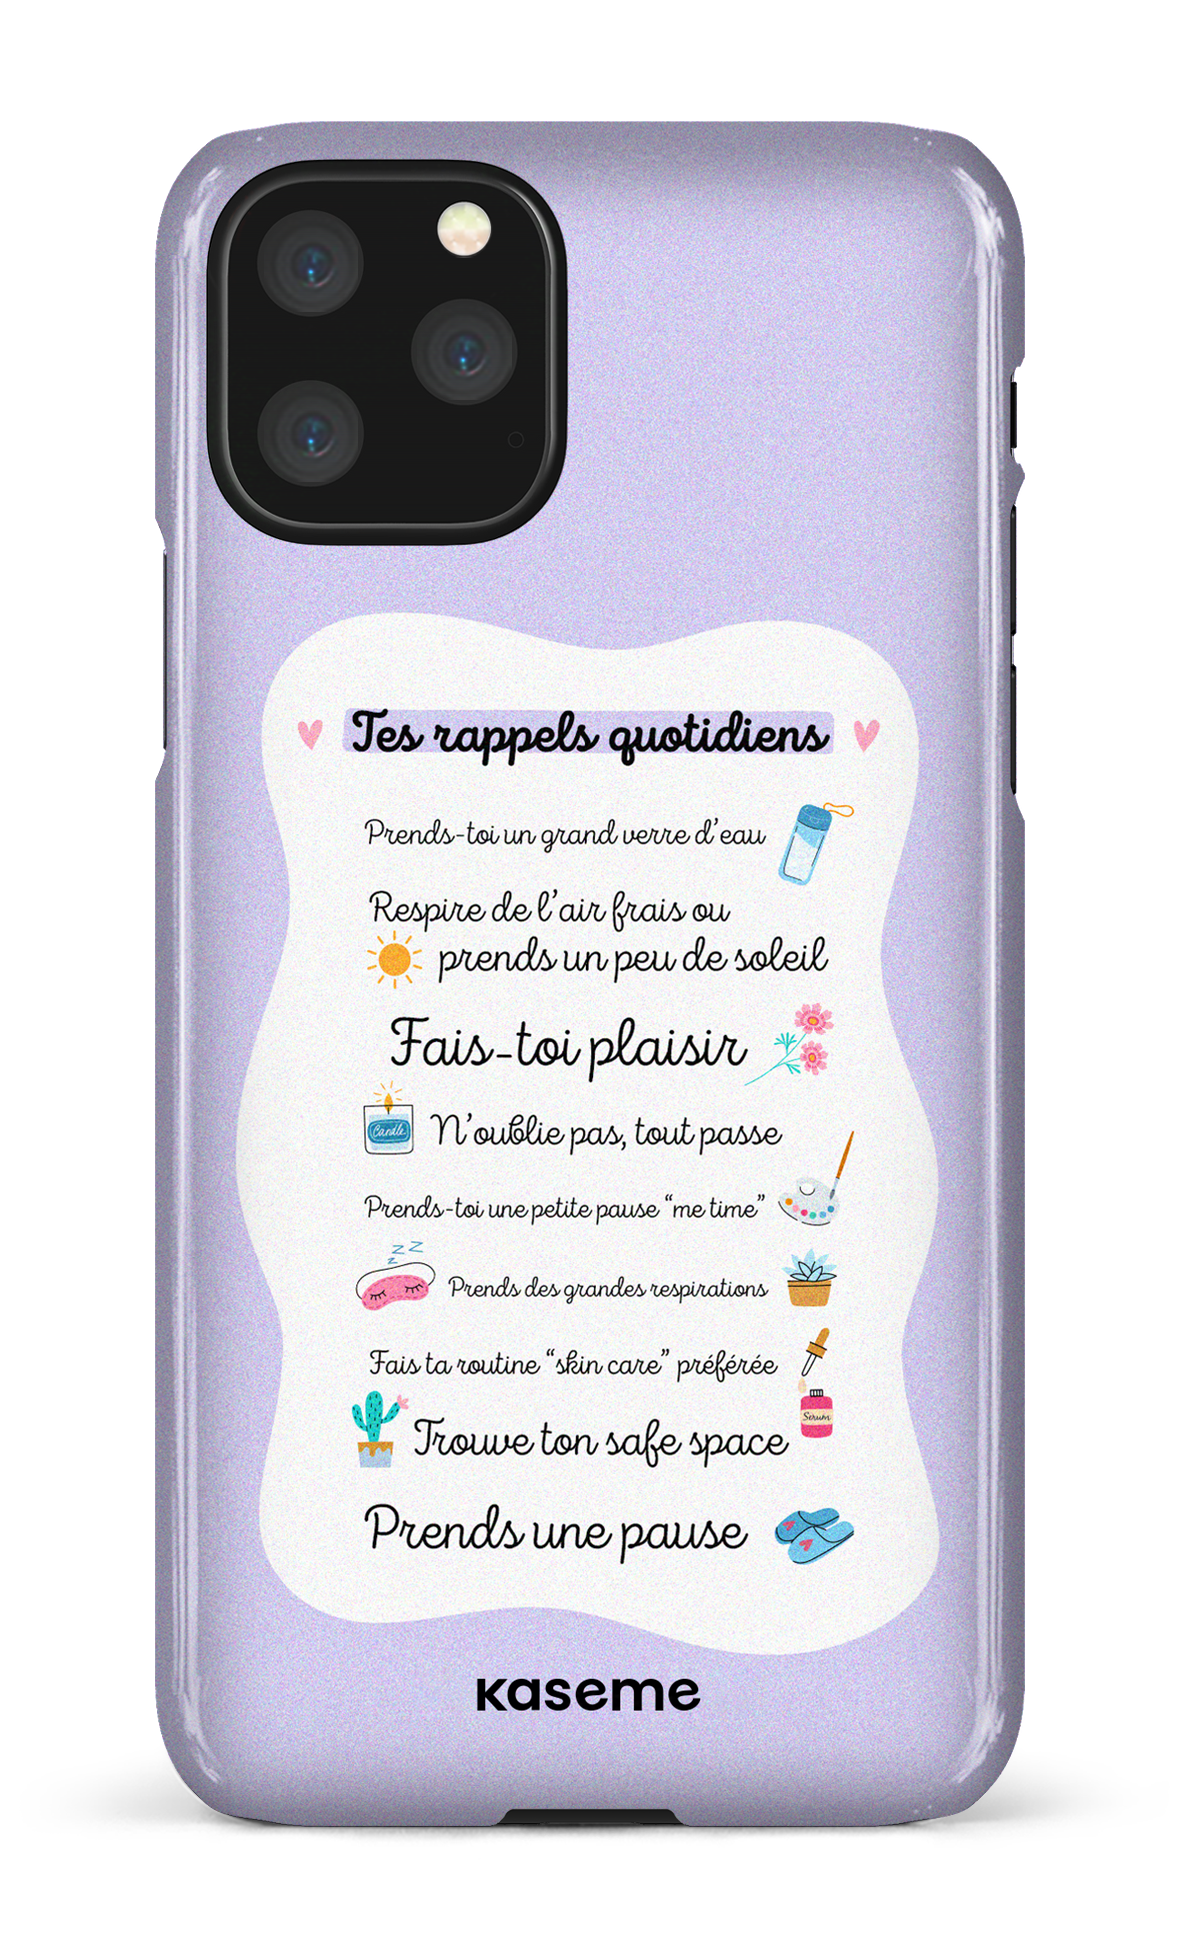 Tes rappels quotidiens purple - iPhone 11 Pro